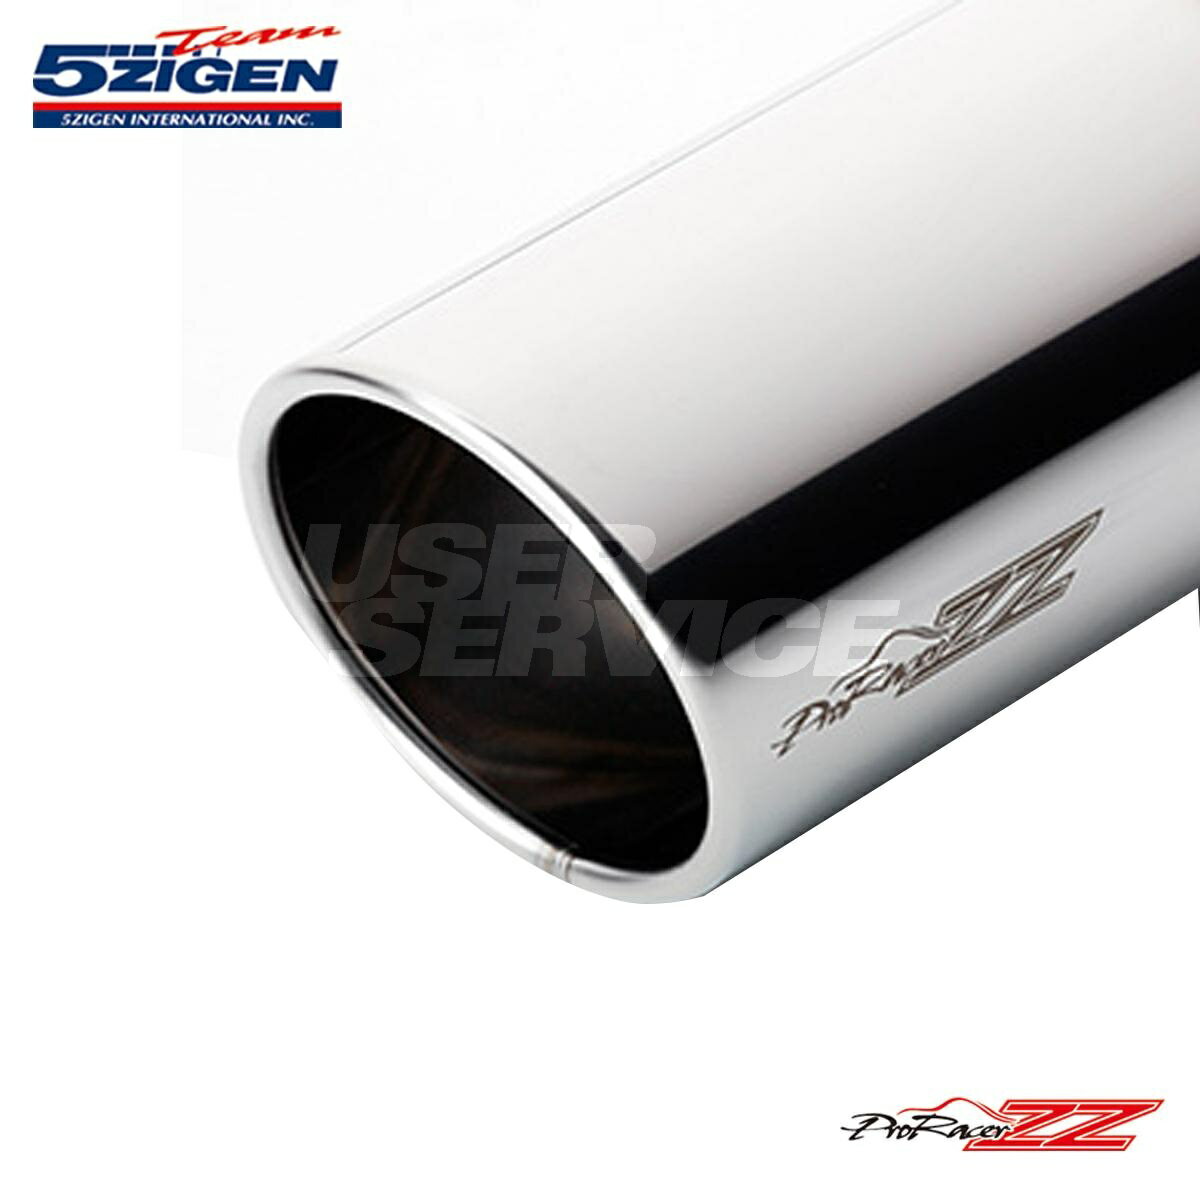 5次元 セリカ E-ST202 マフラー PZT-018 5ZIGEN Pro Racer ZZ プロレーサーZZ W